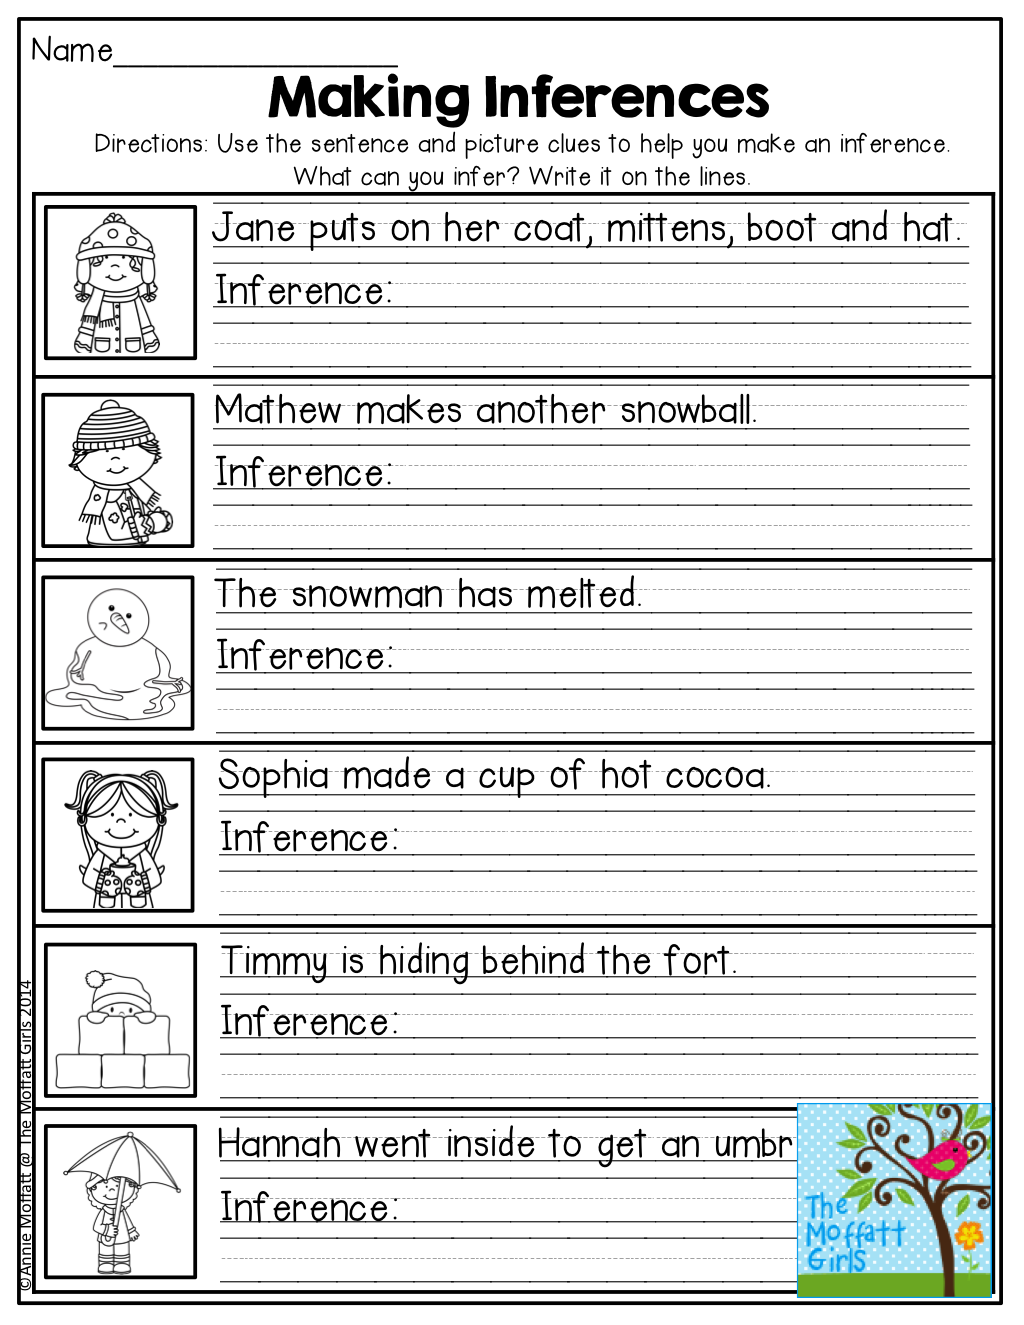 Making Inferences Worksheets 2nd Grade The Best Worksheets Image